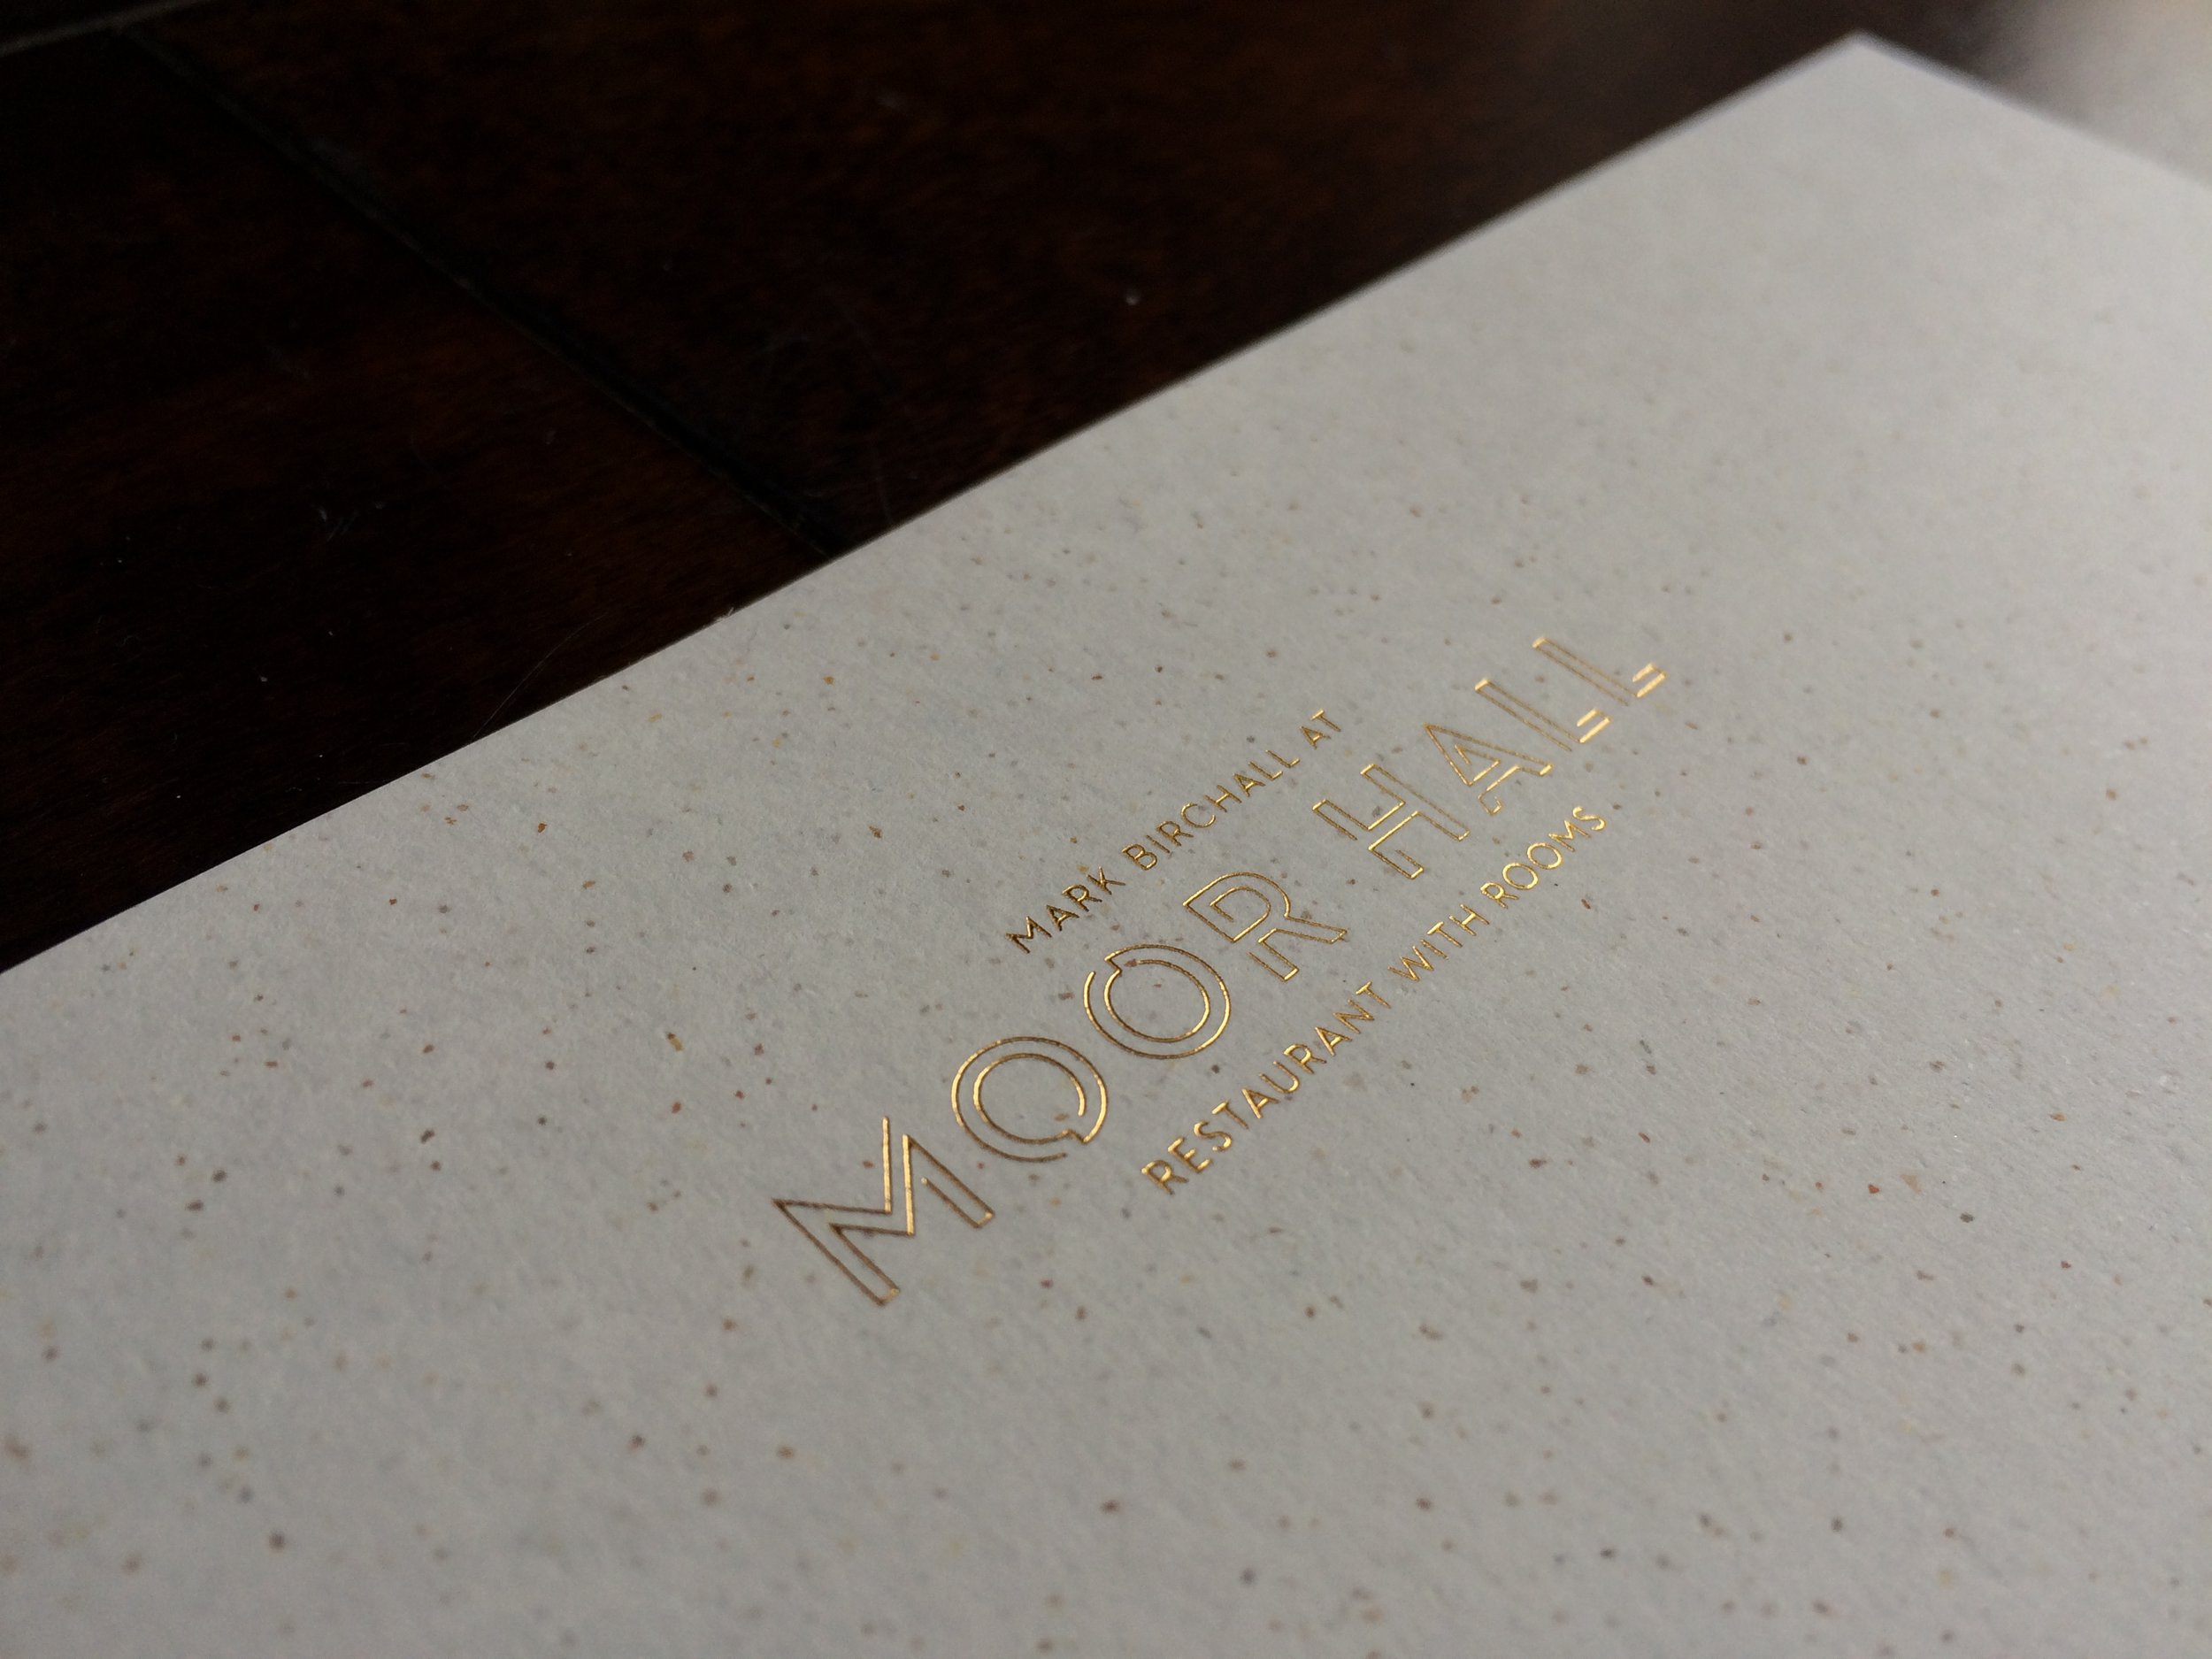 Moor Hall gold foil printed menus